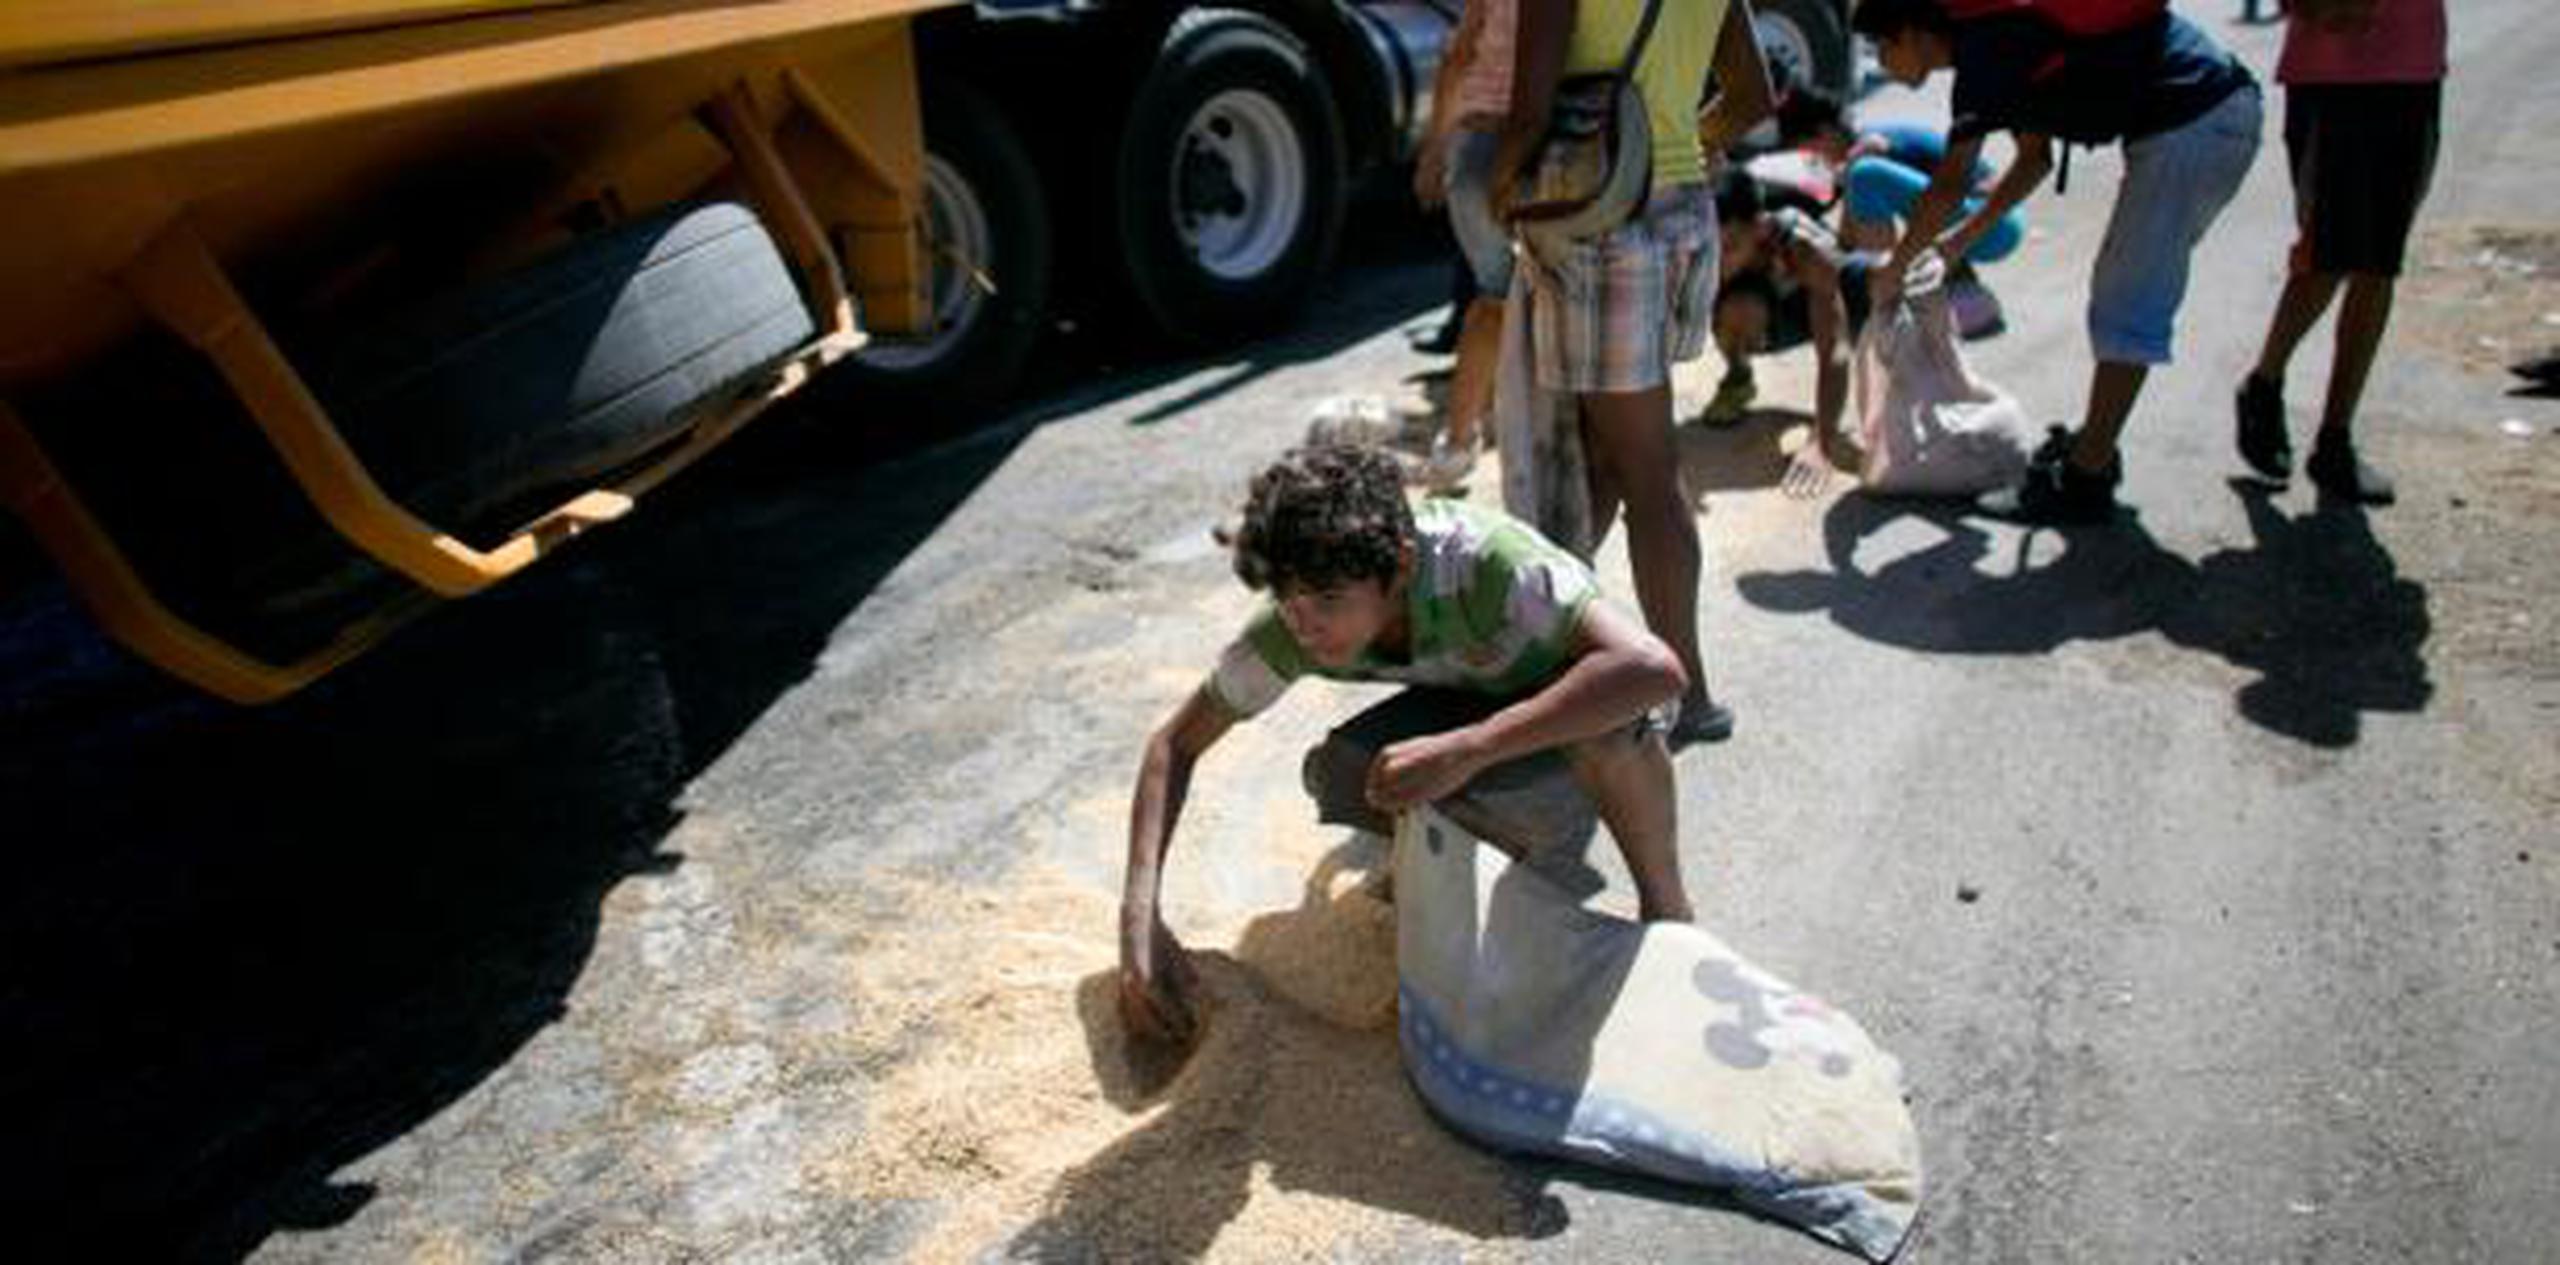 Según la fundación Cáritas de Venezuela, entre el "48 % a 80 % de los hogares ha incurrido en alguna forma de privación alimentaria". (AP)